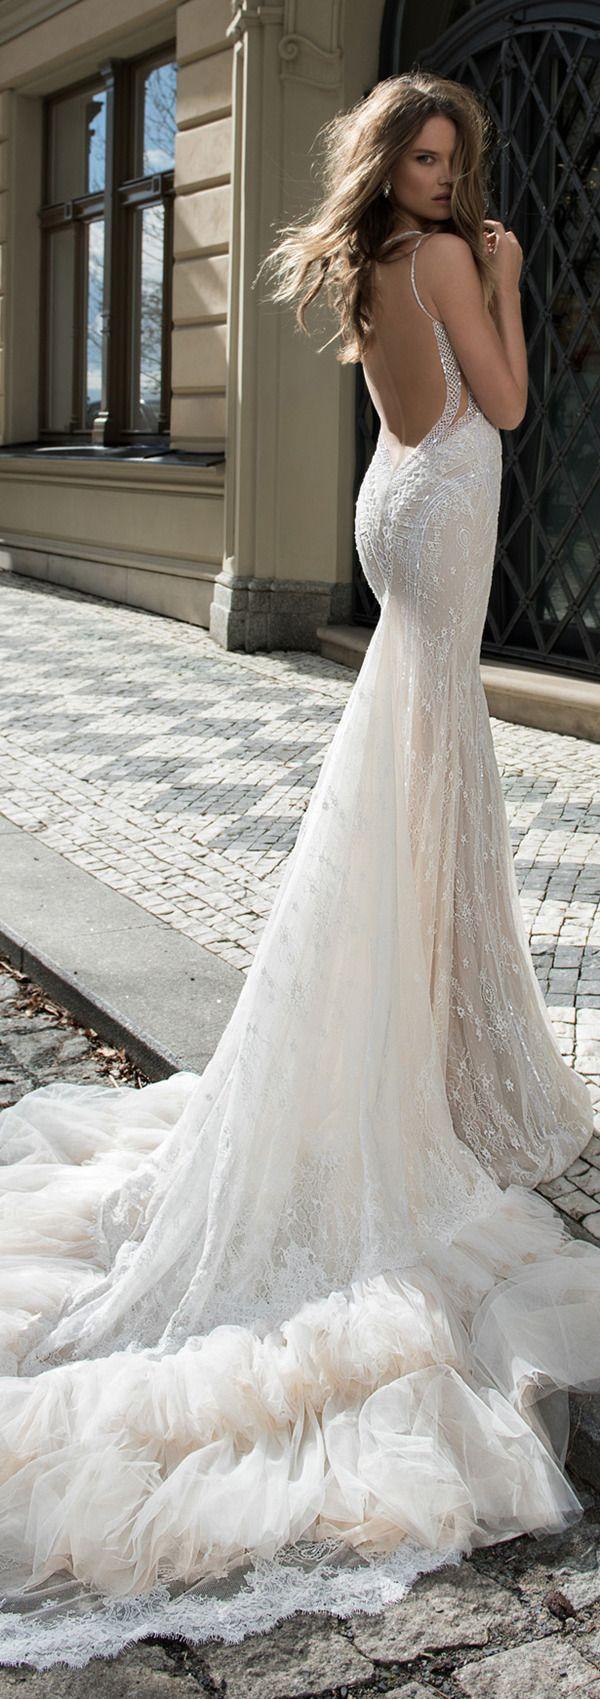 زفاف - Berta Bridal Wedding Dresses For Fall 2015